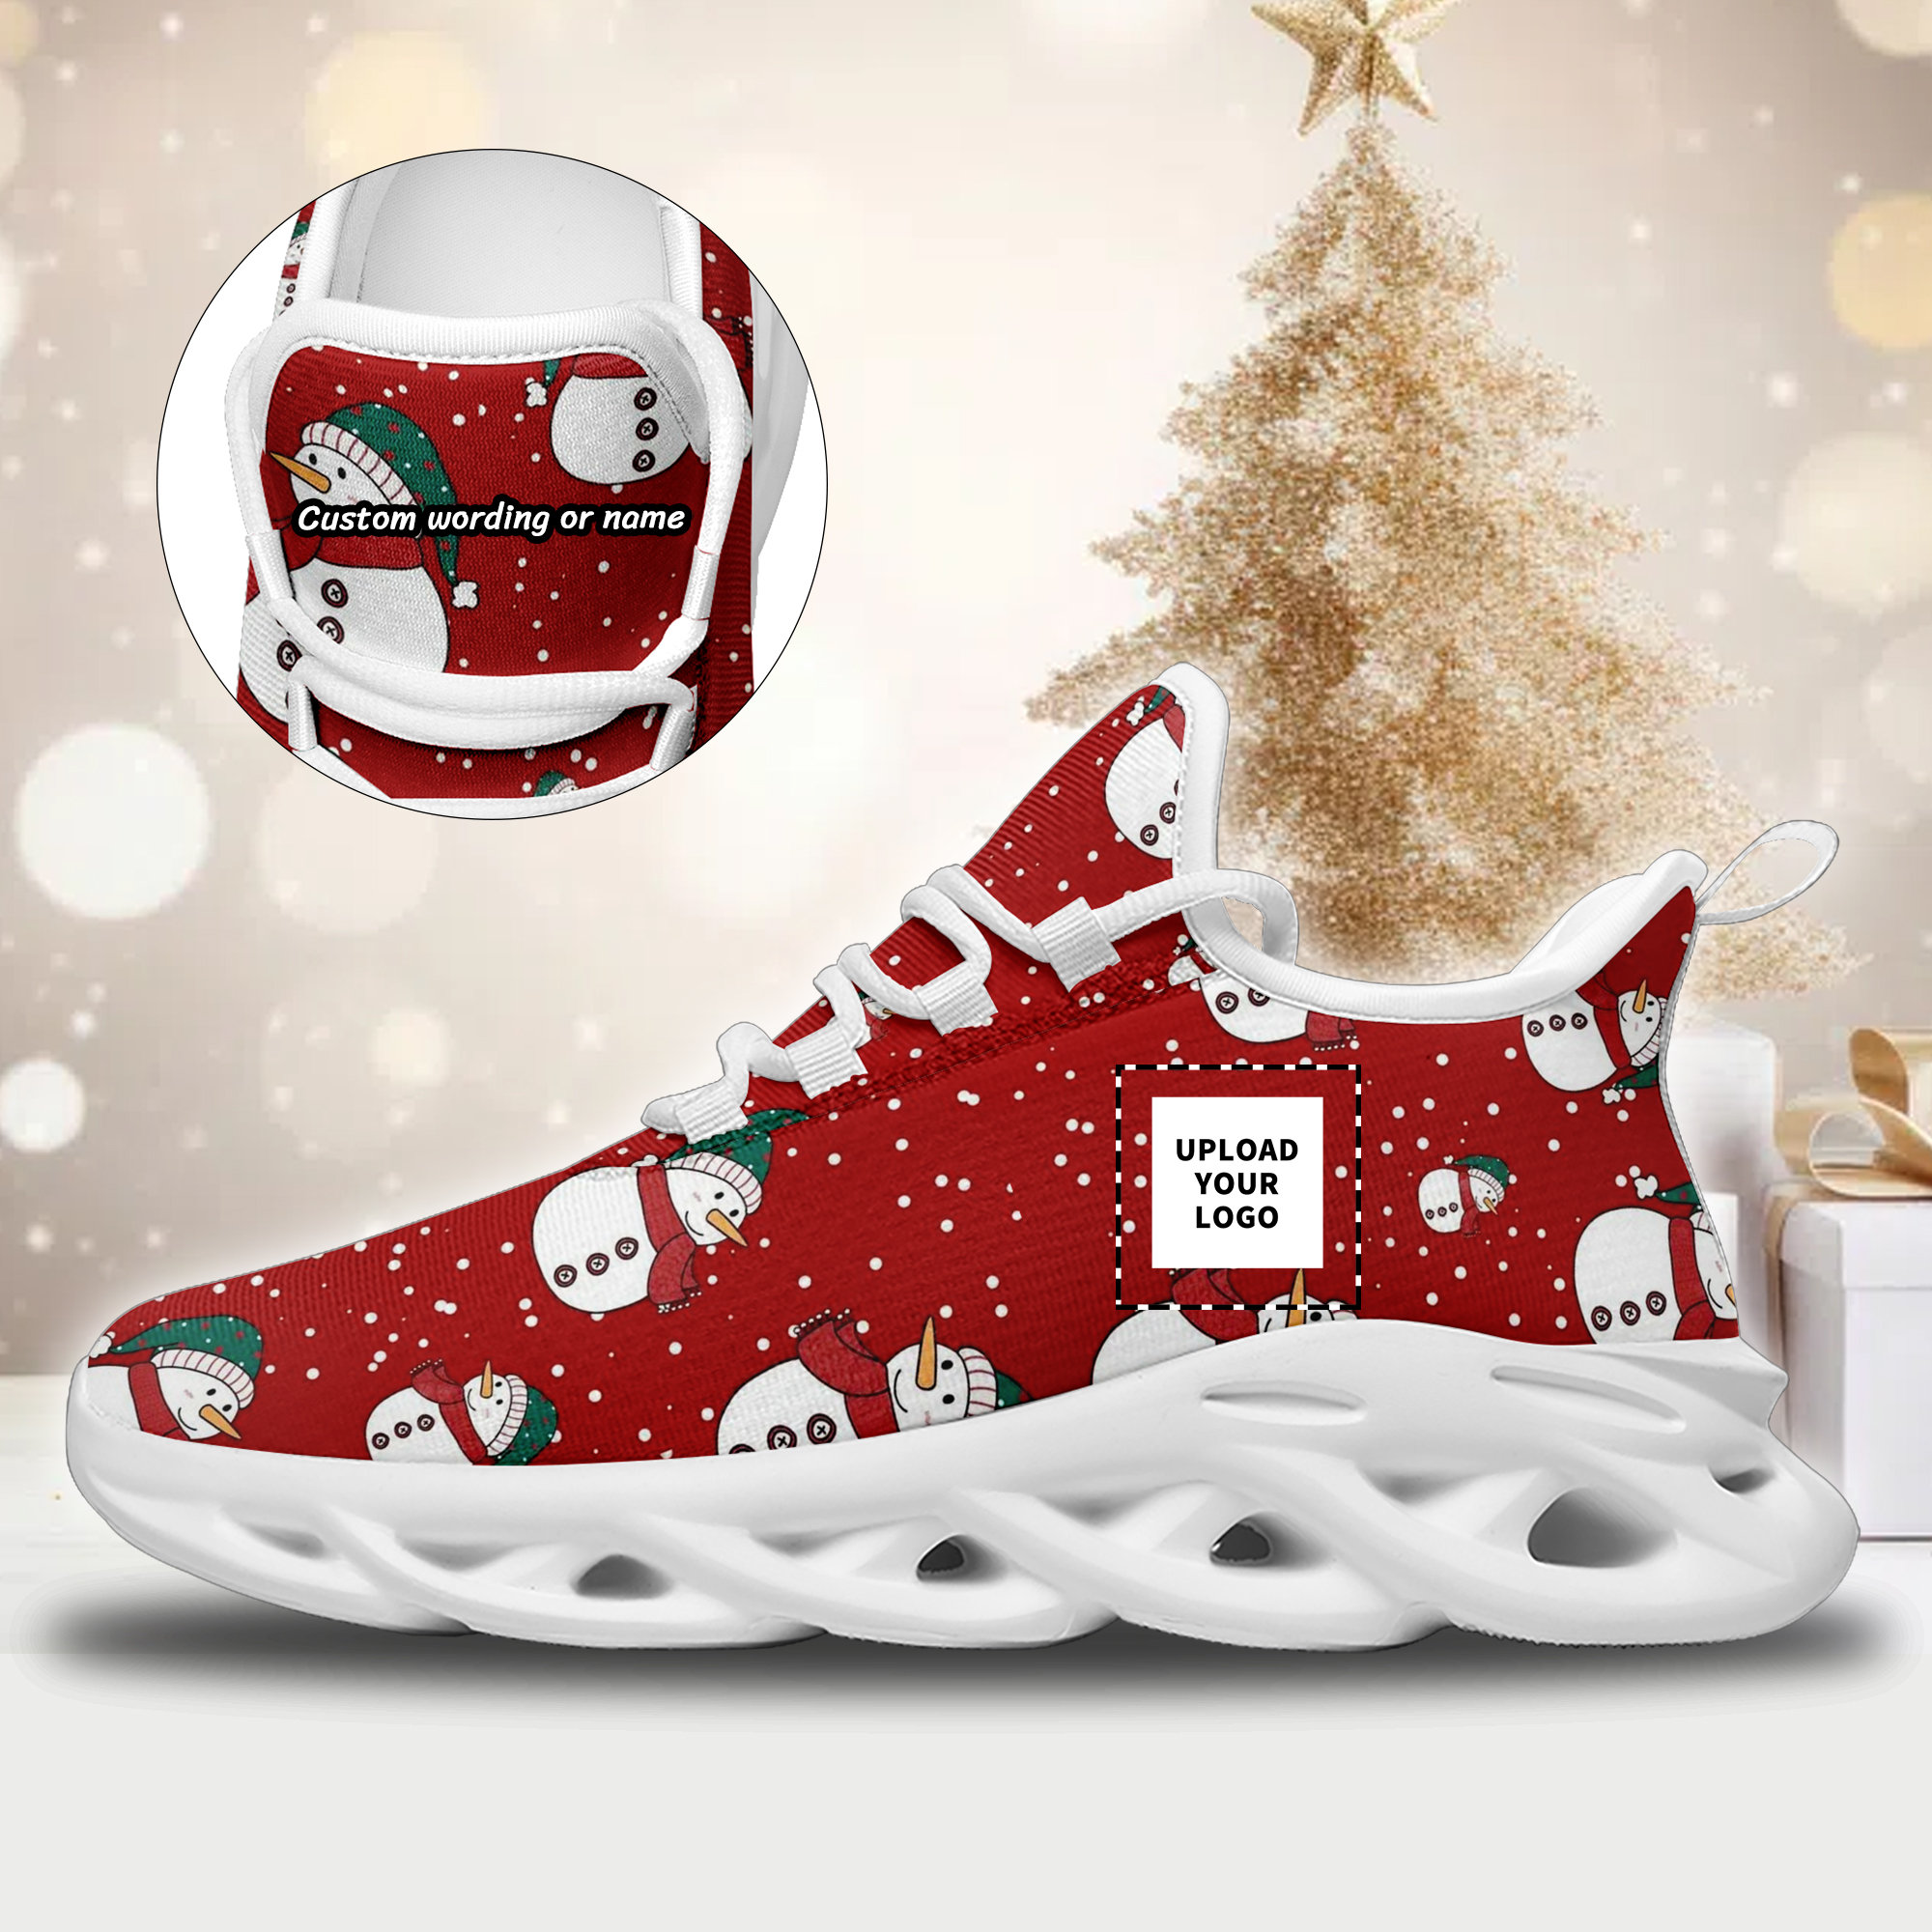 Designer Sneakers for Women - Christmas